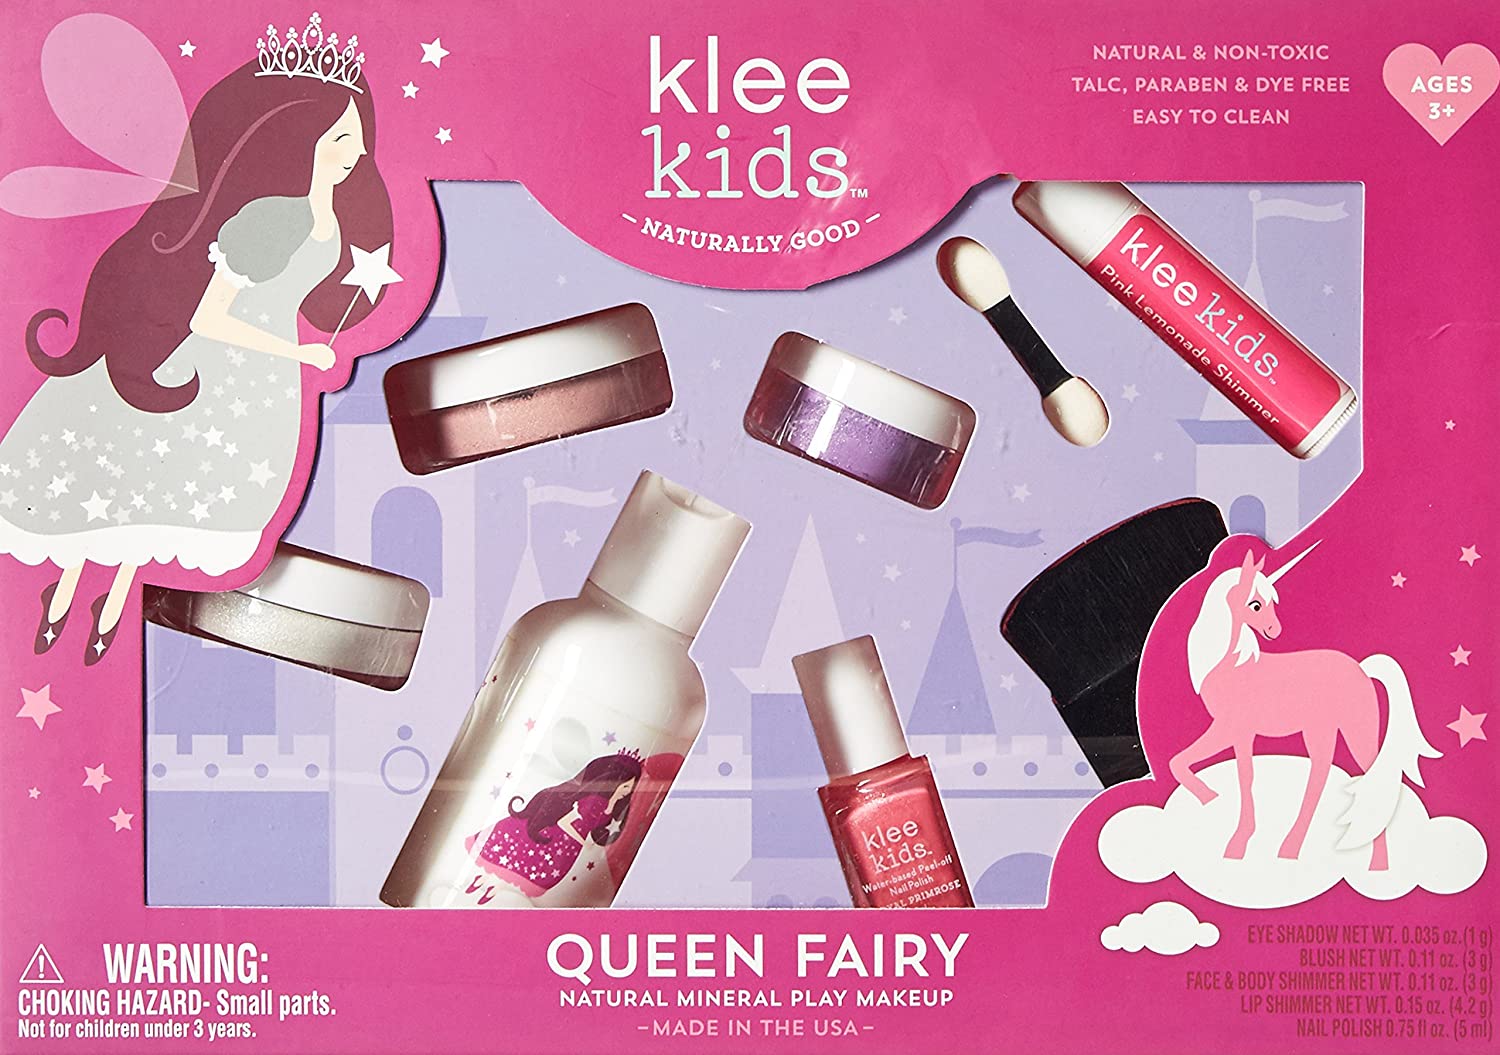 Luna Star Naturals Klee Kids Natural Mineral Makeup-Best Makeup Kits for Kids